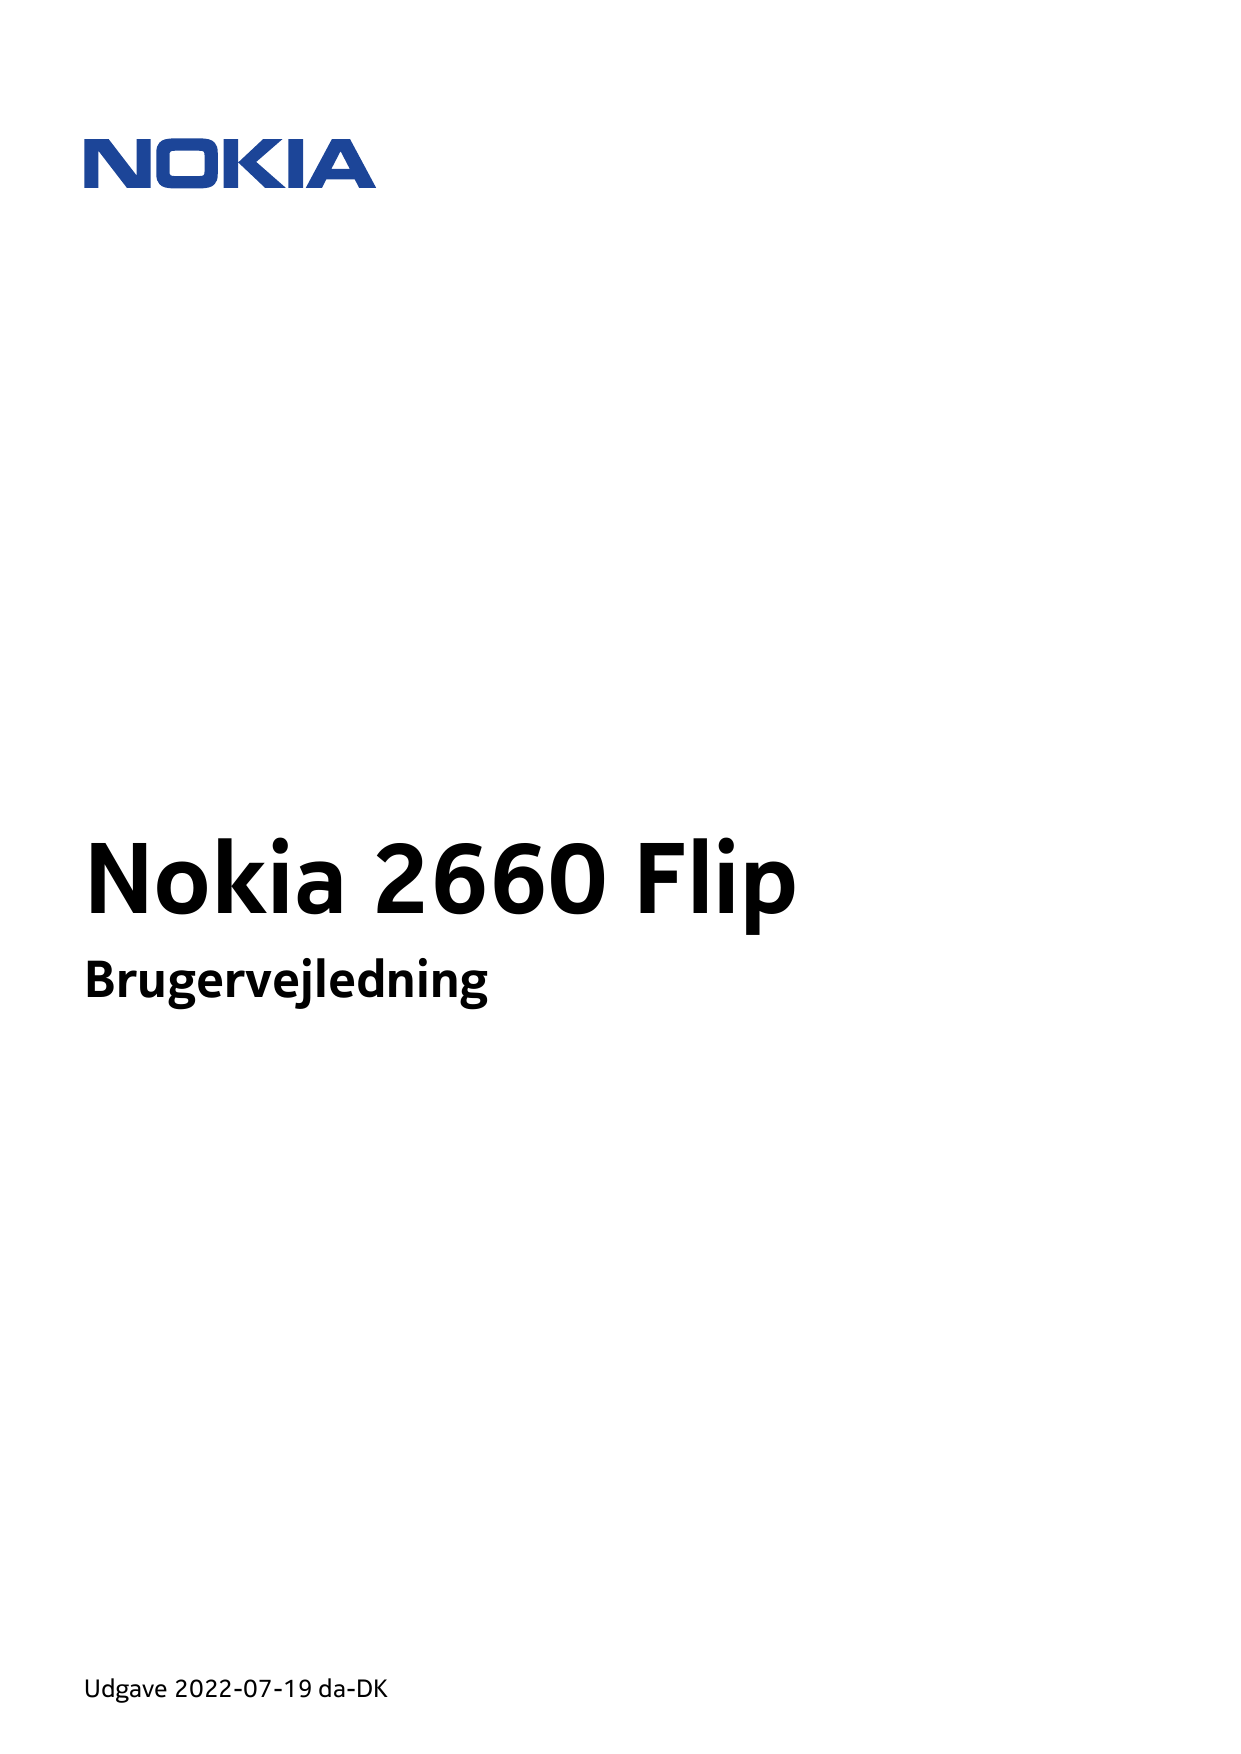 Nokia 2660 FlipBrugervejledningUdgave 2022-07-19 da-DK